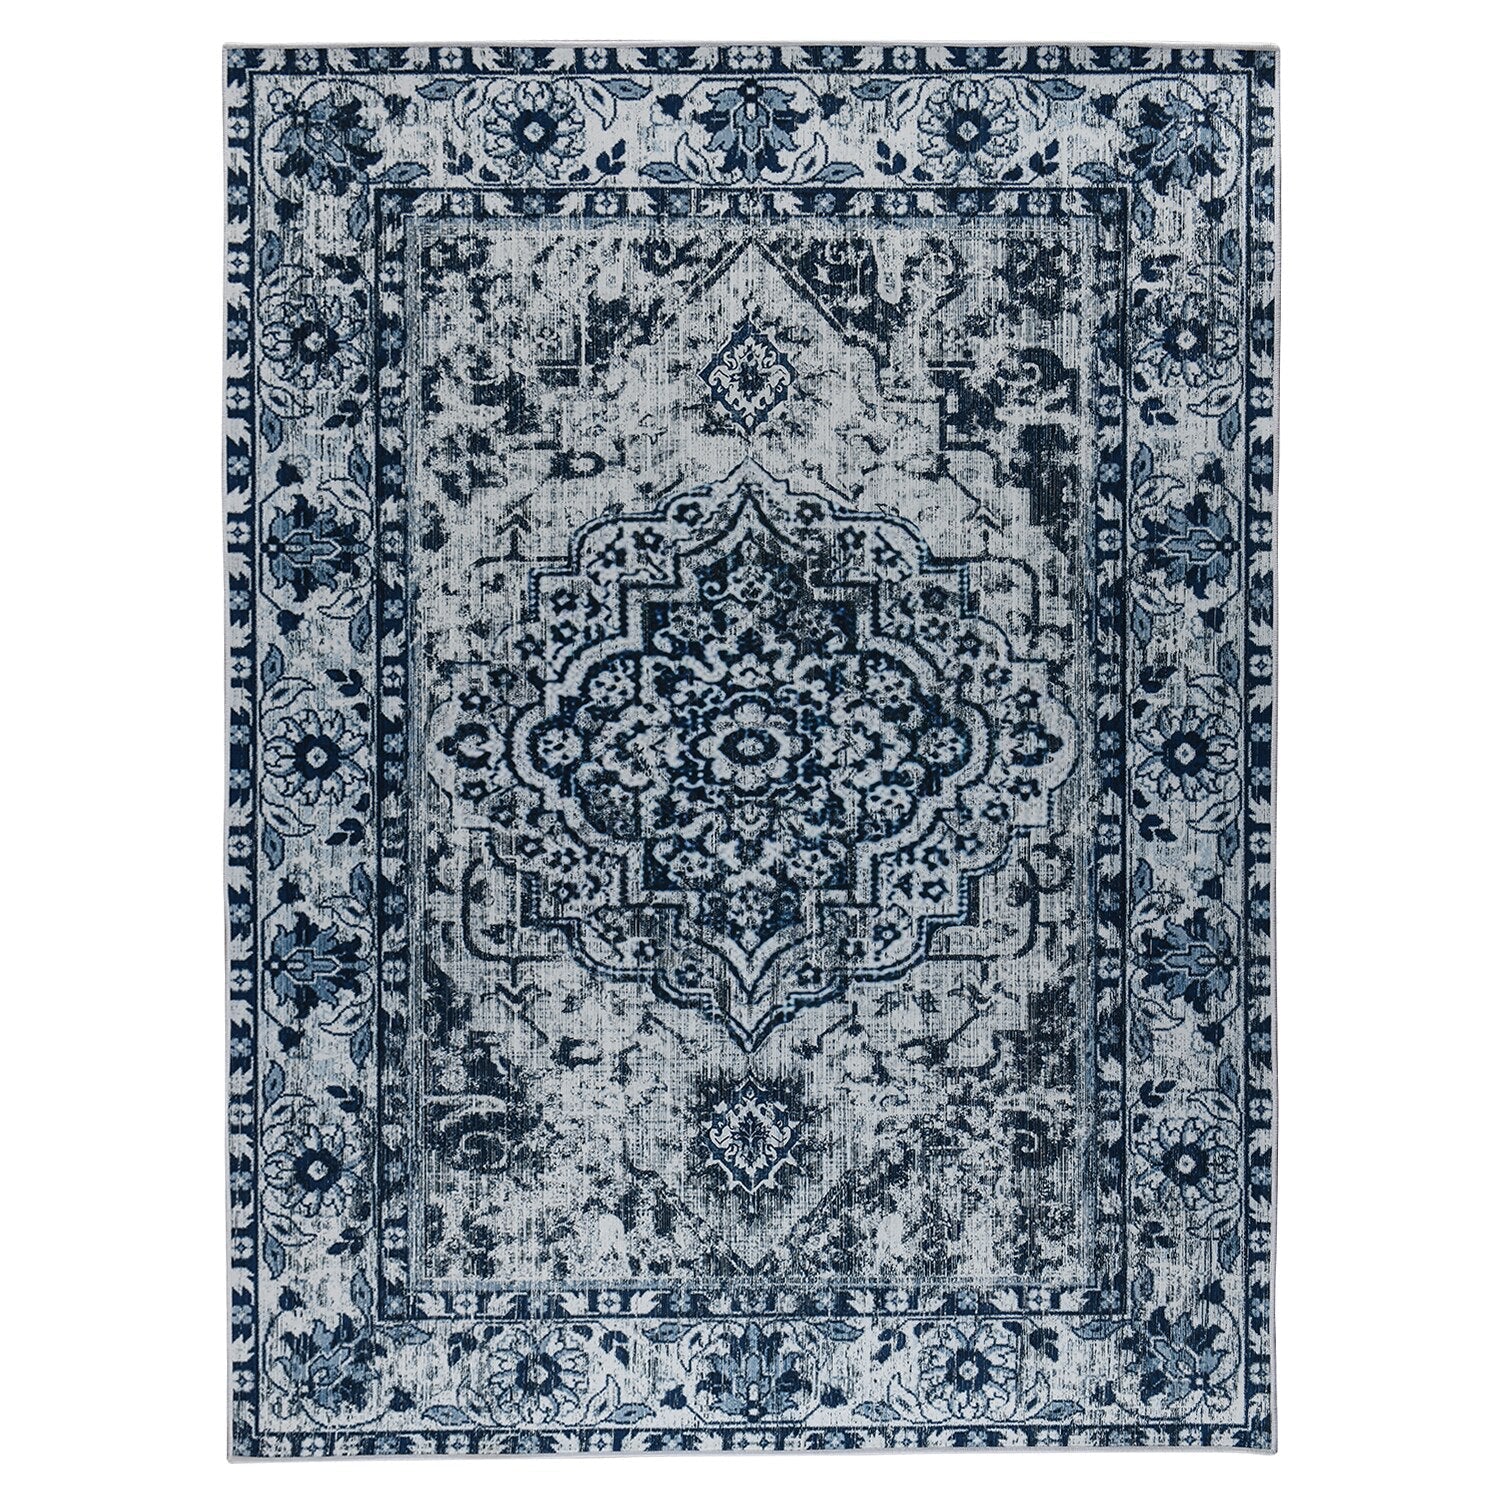 Retro Ethnic Carpets Turkish Persian Rug for Living Room Bedside Bedroom Vintage Floor Mat Entrance Doormat Carpet Large Rug